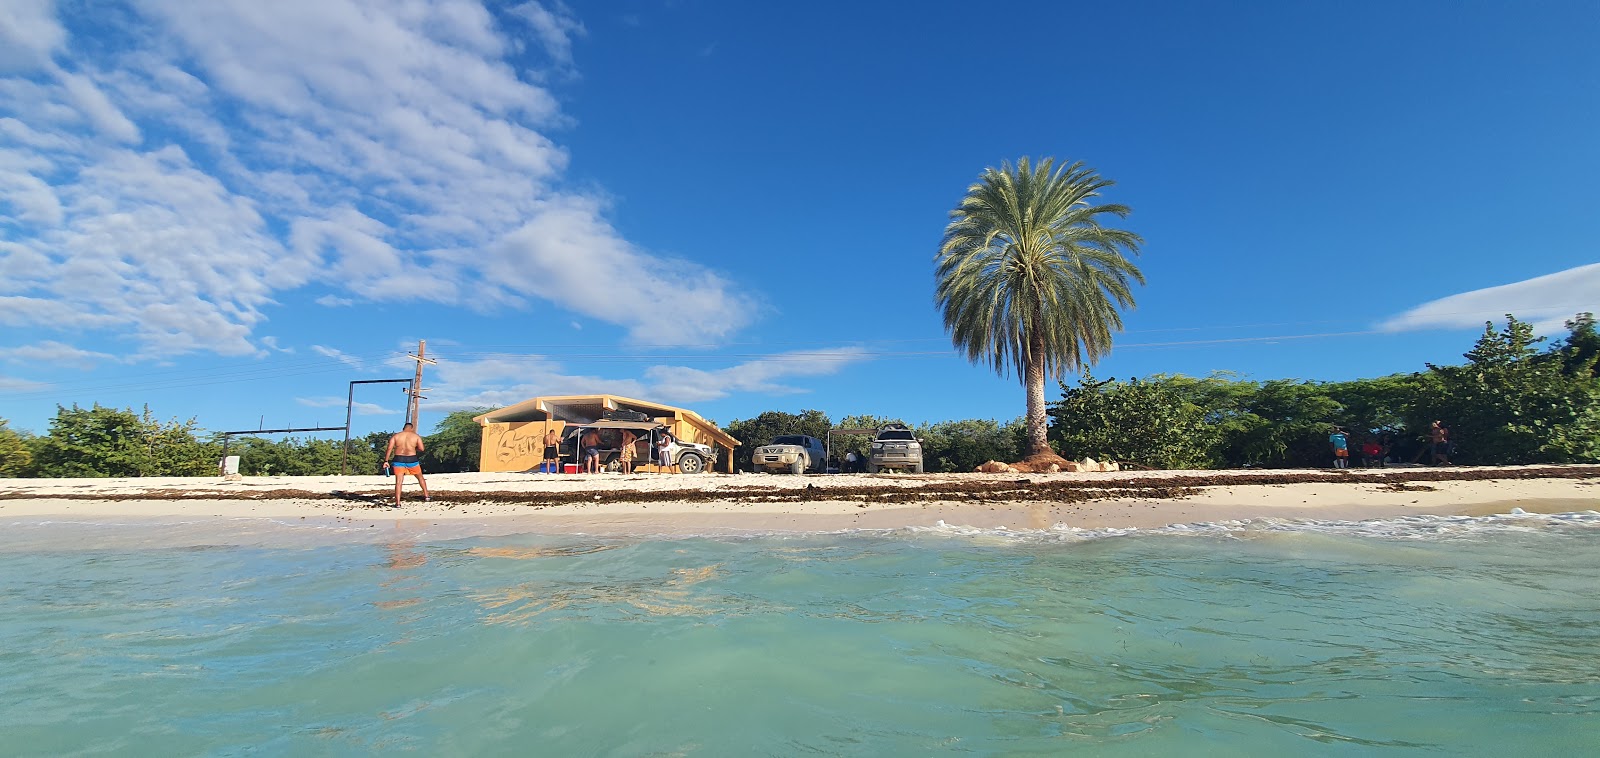 Photo de Cabo Rojo beach - endroit populaire parmi les connaisseurs de la détente